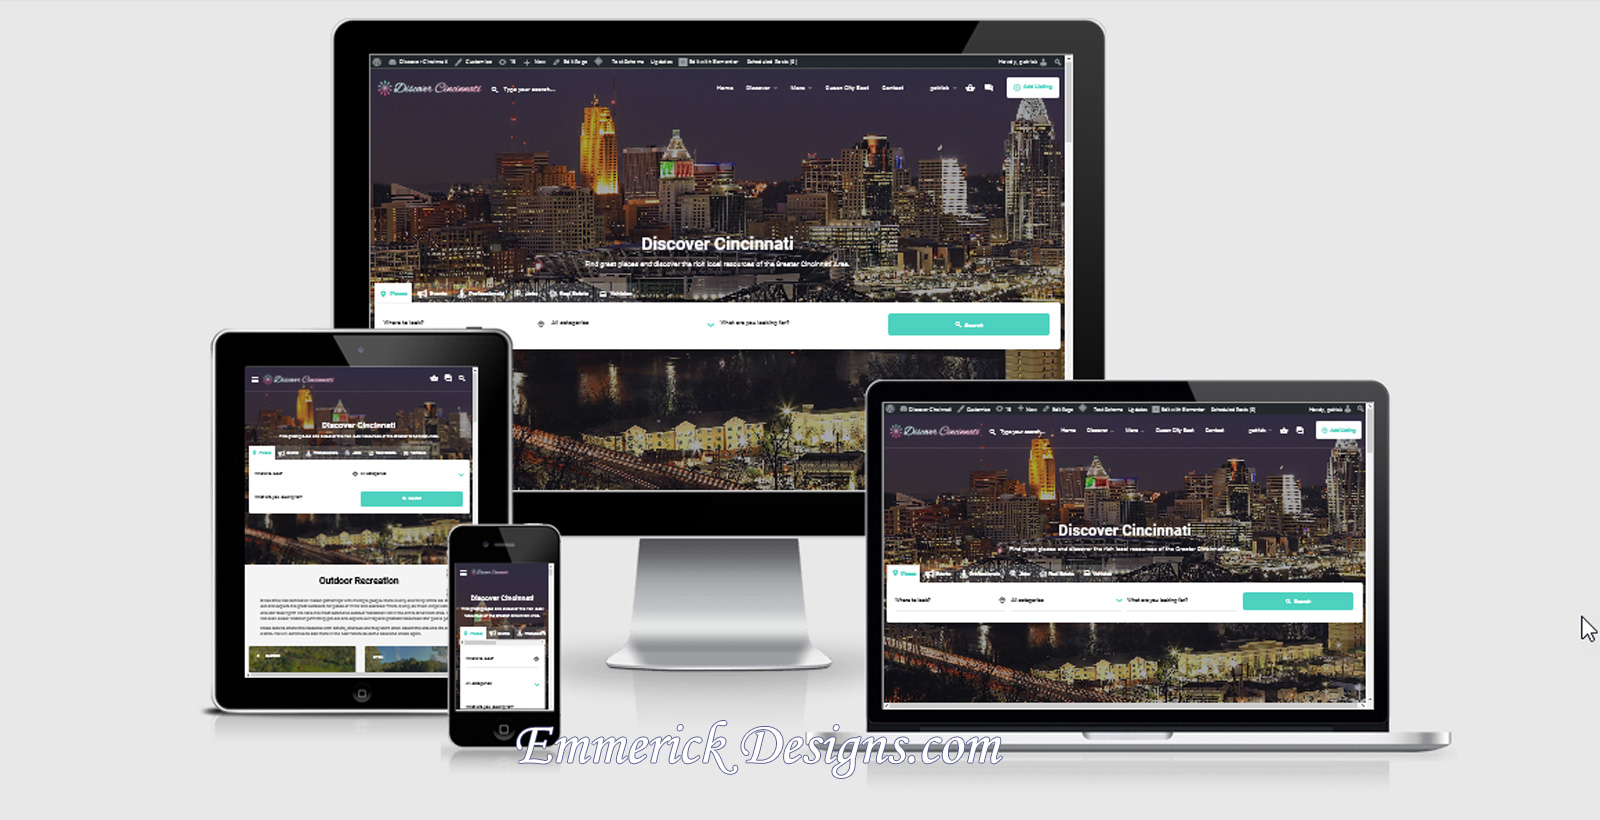 Web Design - Discover Cincinnati